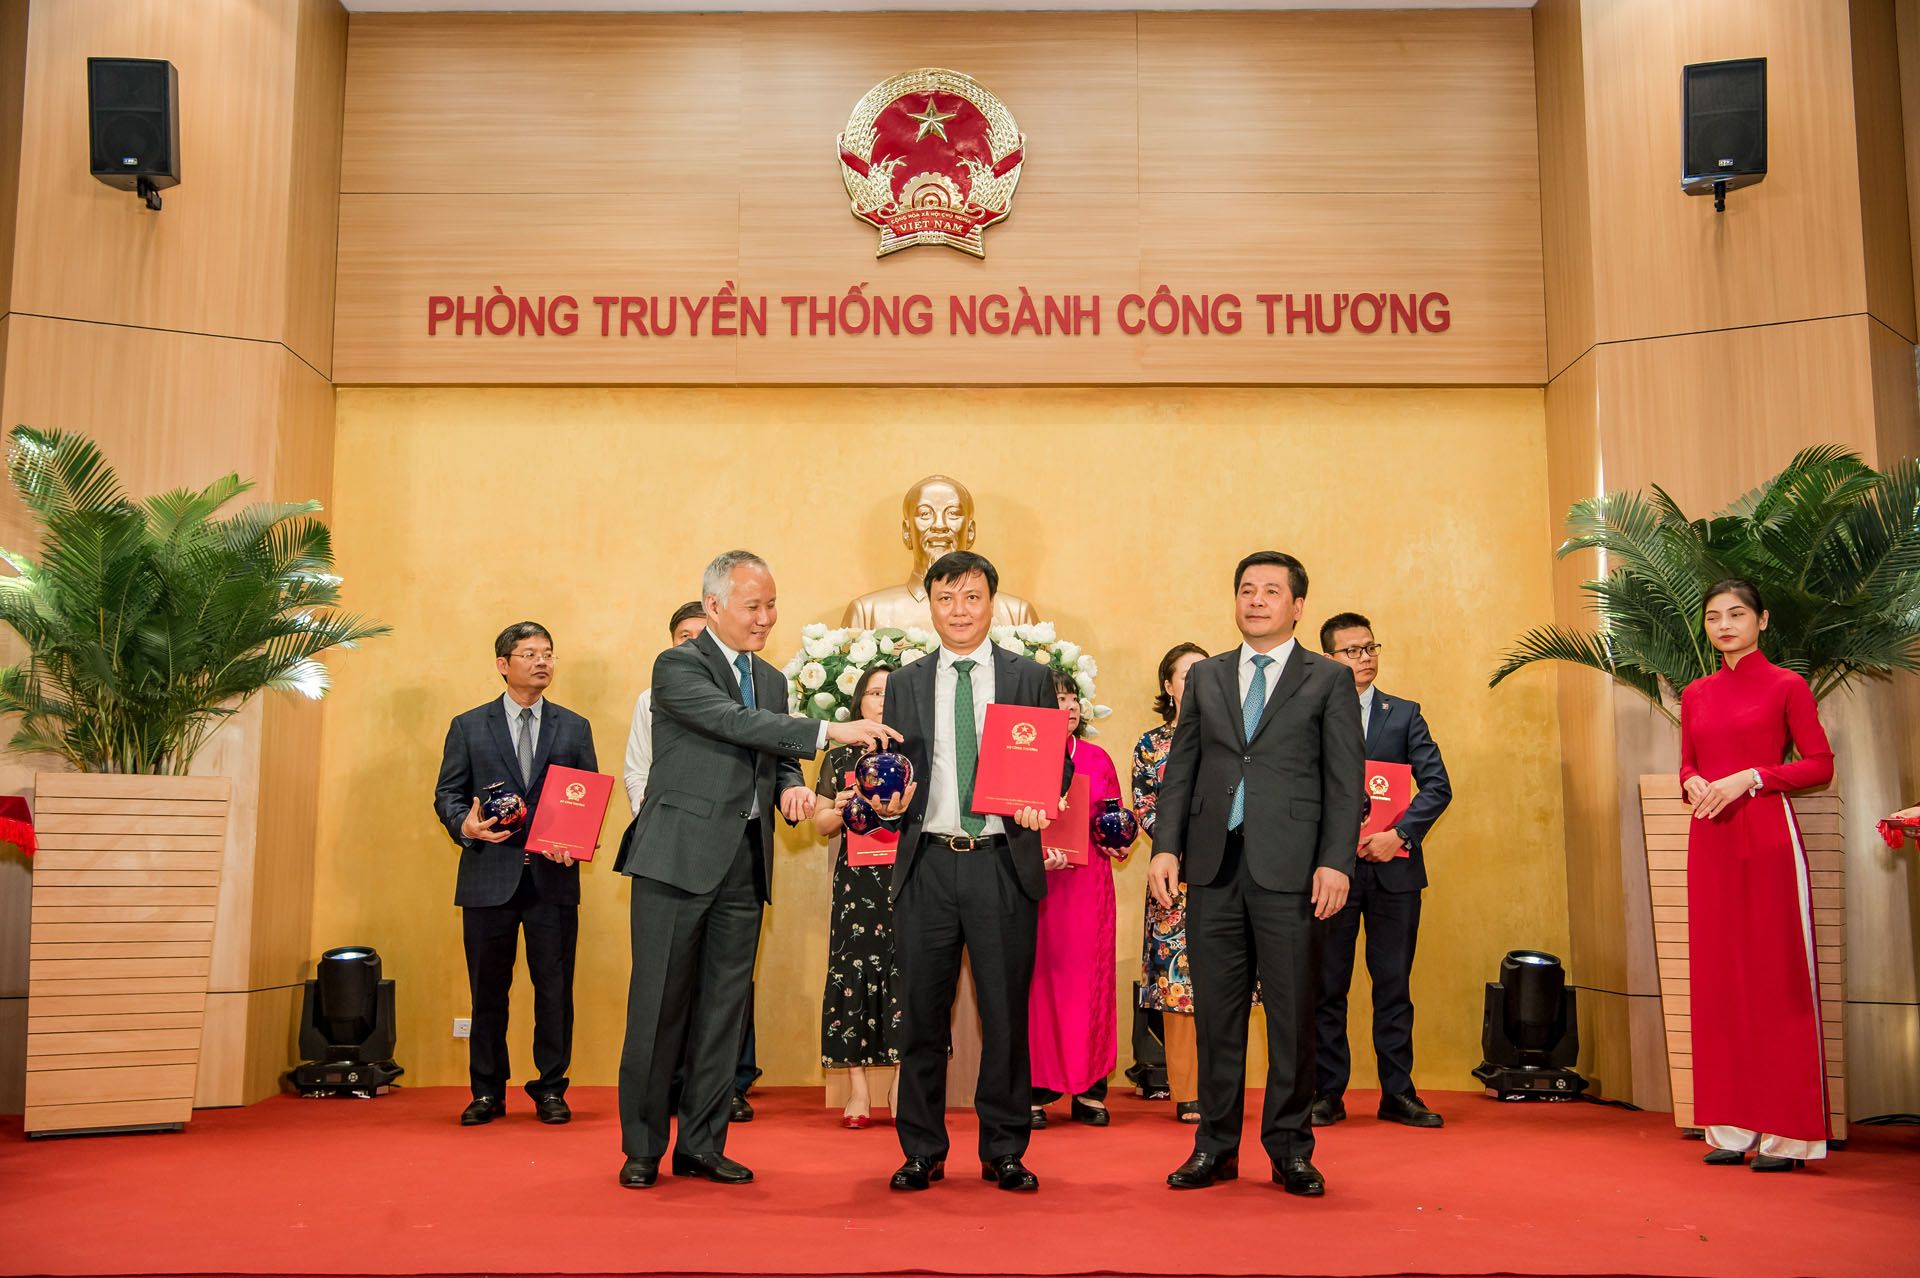 Bộ trưởng Nguyễn Hồng Diên và Thứ trưởng Trần Quốc Khánh trao thư cảm ơn cho các đại diện tập thể, cá nhân có nhiều đóng góp trong việc xây dựng Phòng Truyền thống ngành Công Thương